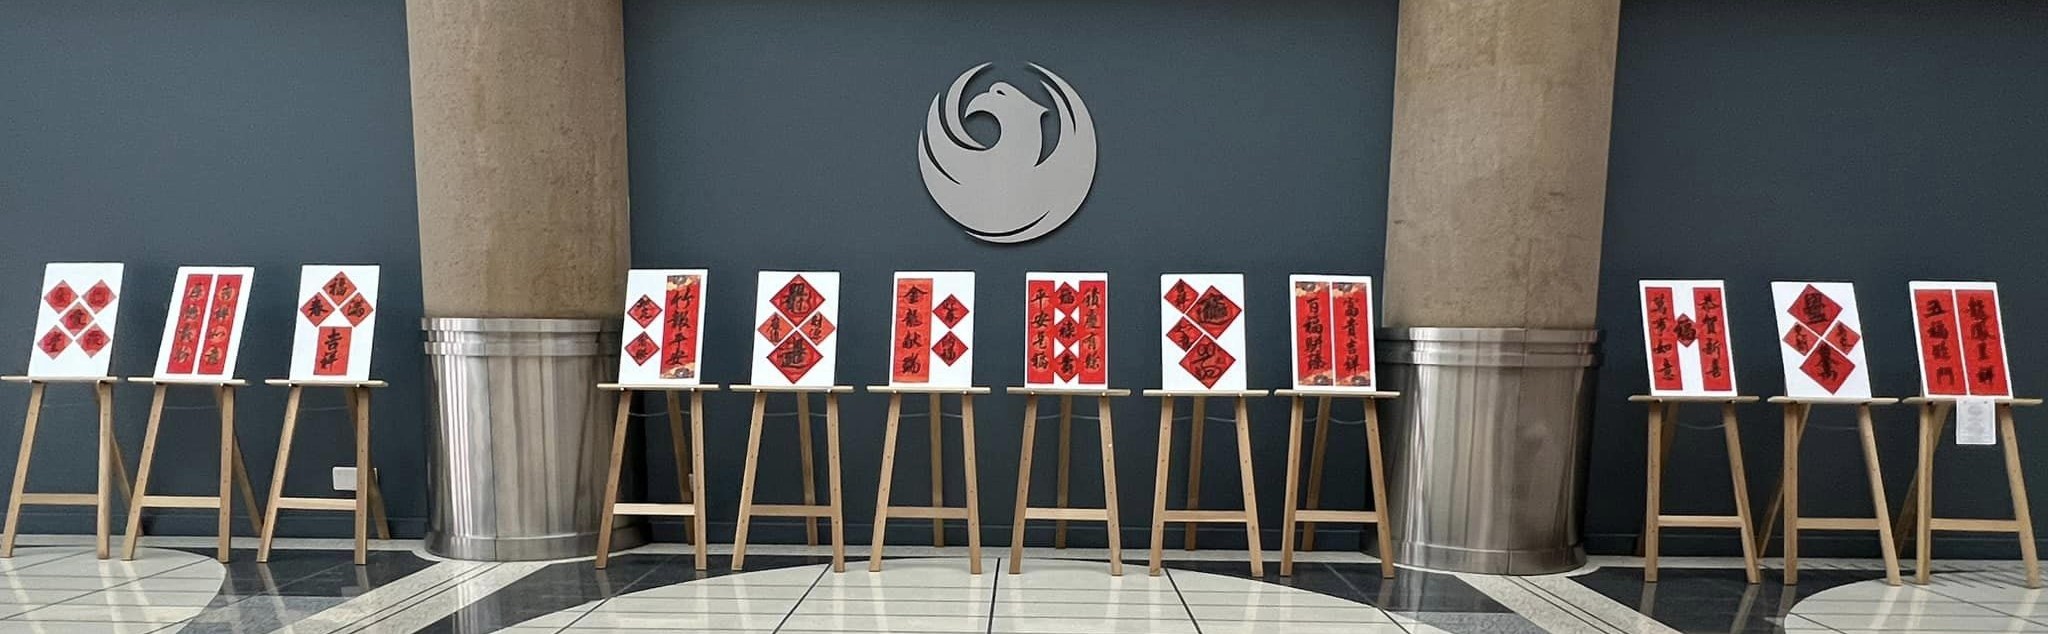 正體漢字對聯展覽在鳳凰城市政府大廳展出